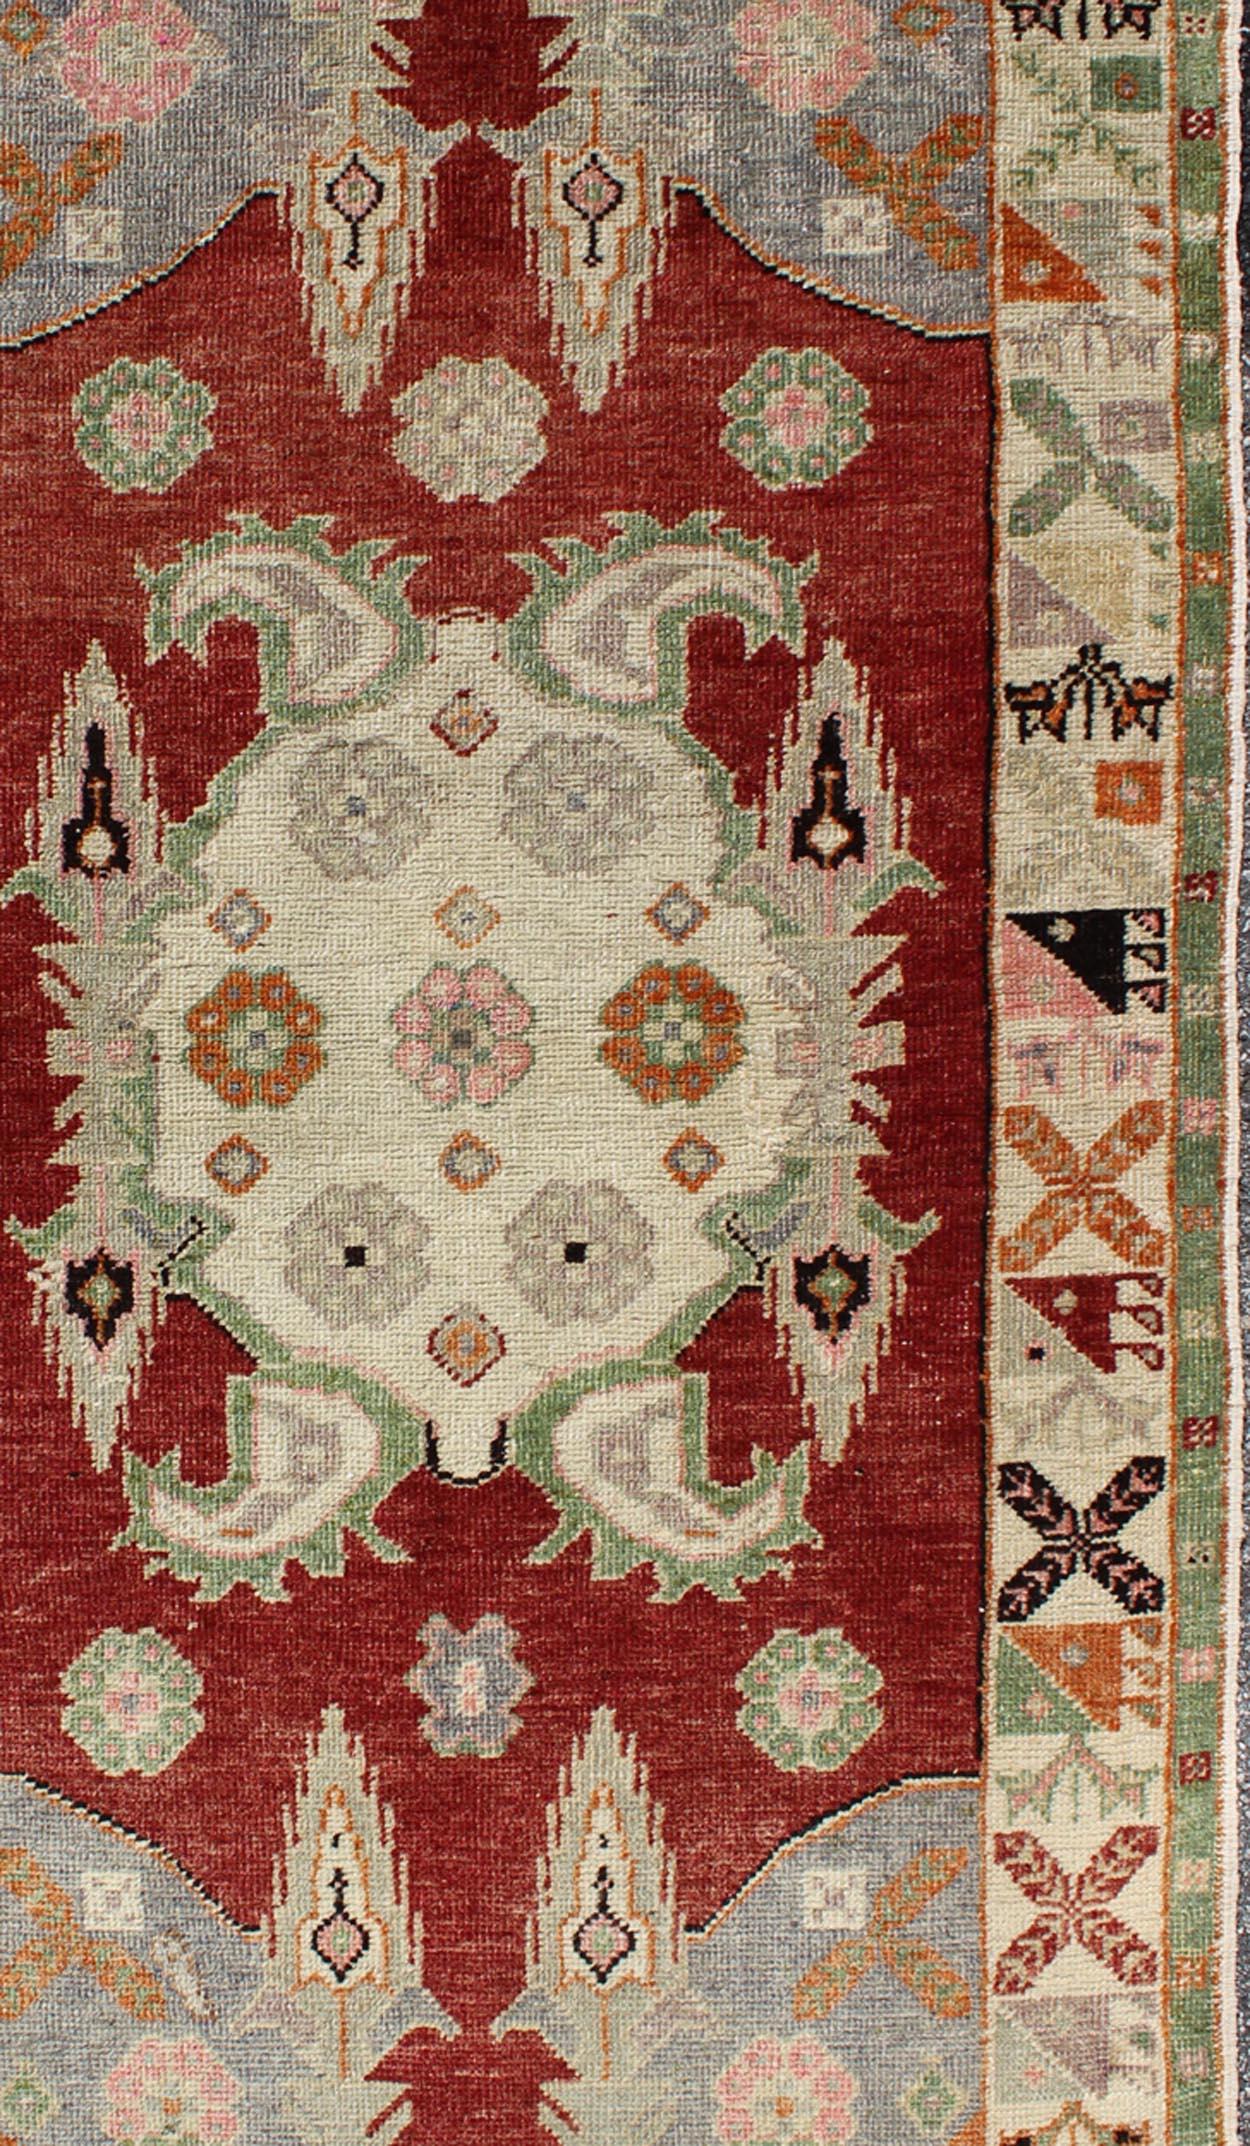 Grünes und rotes Stammesmedaillon Oushak Vintage Teppich aus der Türkei, Teppich TU-UGU-49, Herkunftsland / Typ: Türkei / Oushak, um 1930.

Dieser prächtige türkische Oushak im Vintage-Stil weist eine herrliche Färbung auf, gepaart mit einem